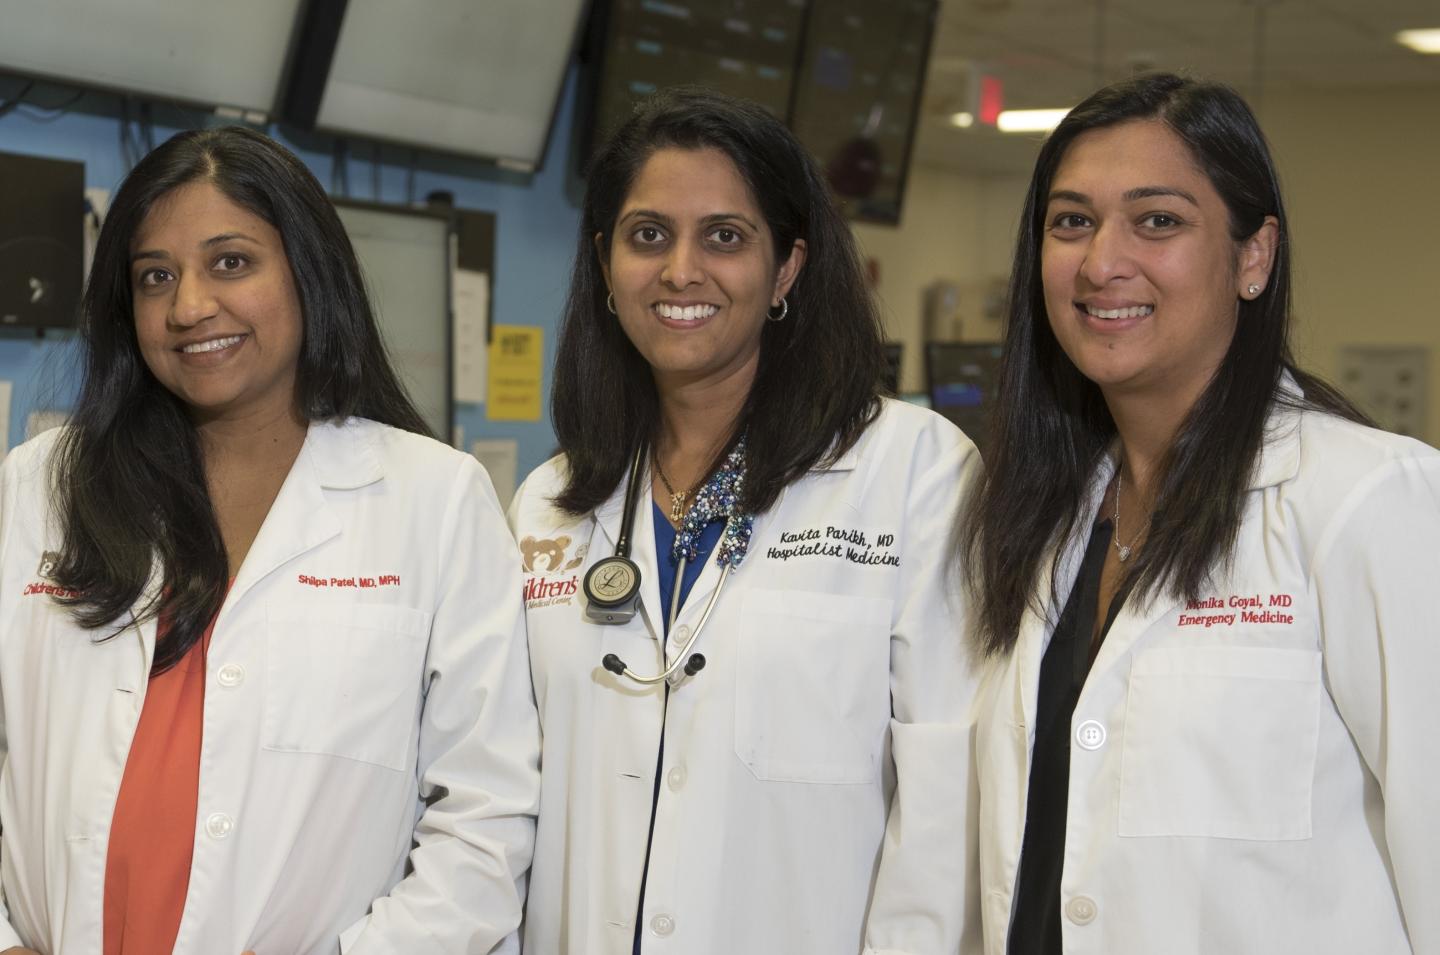 Drs. Kavita Parikh, Shilpa Patel and Monika Goyal